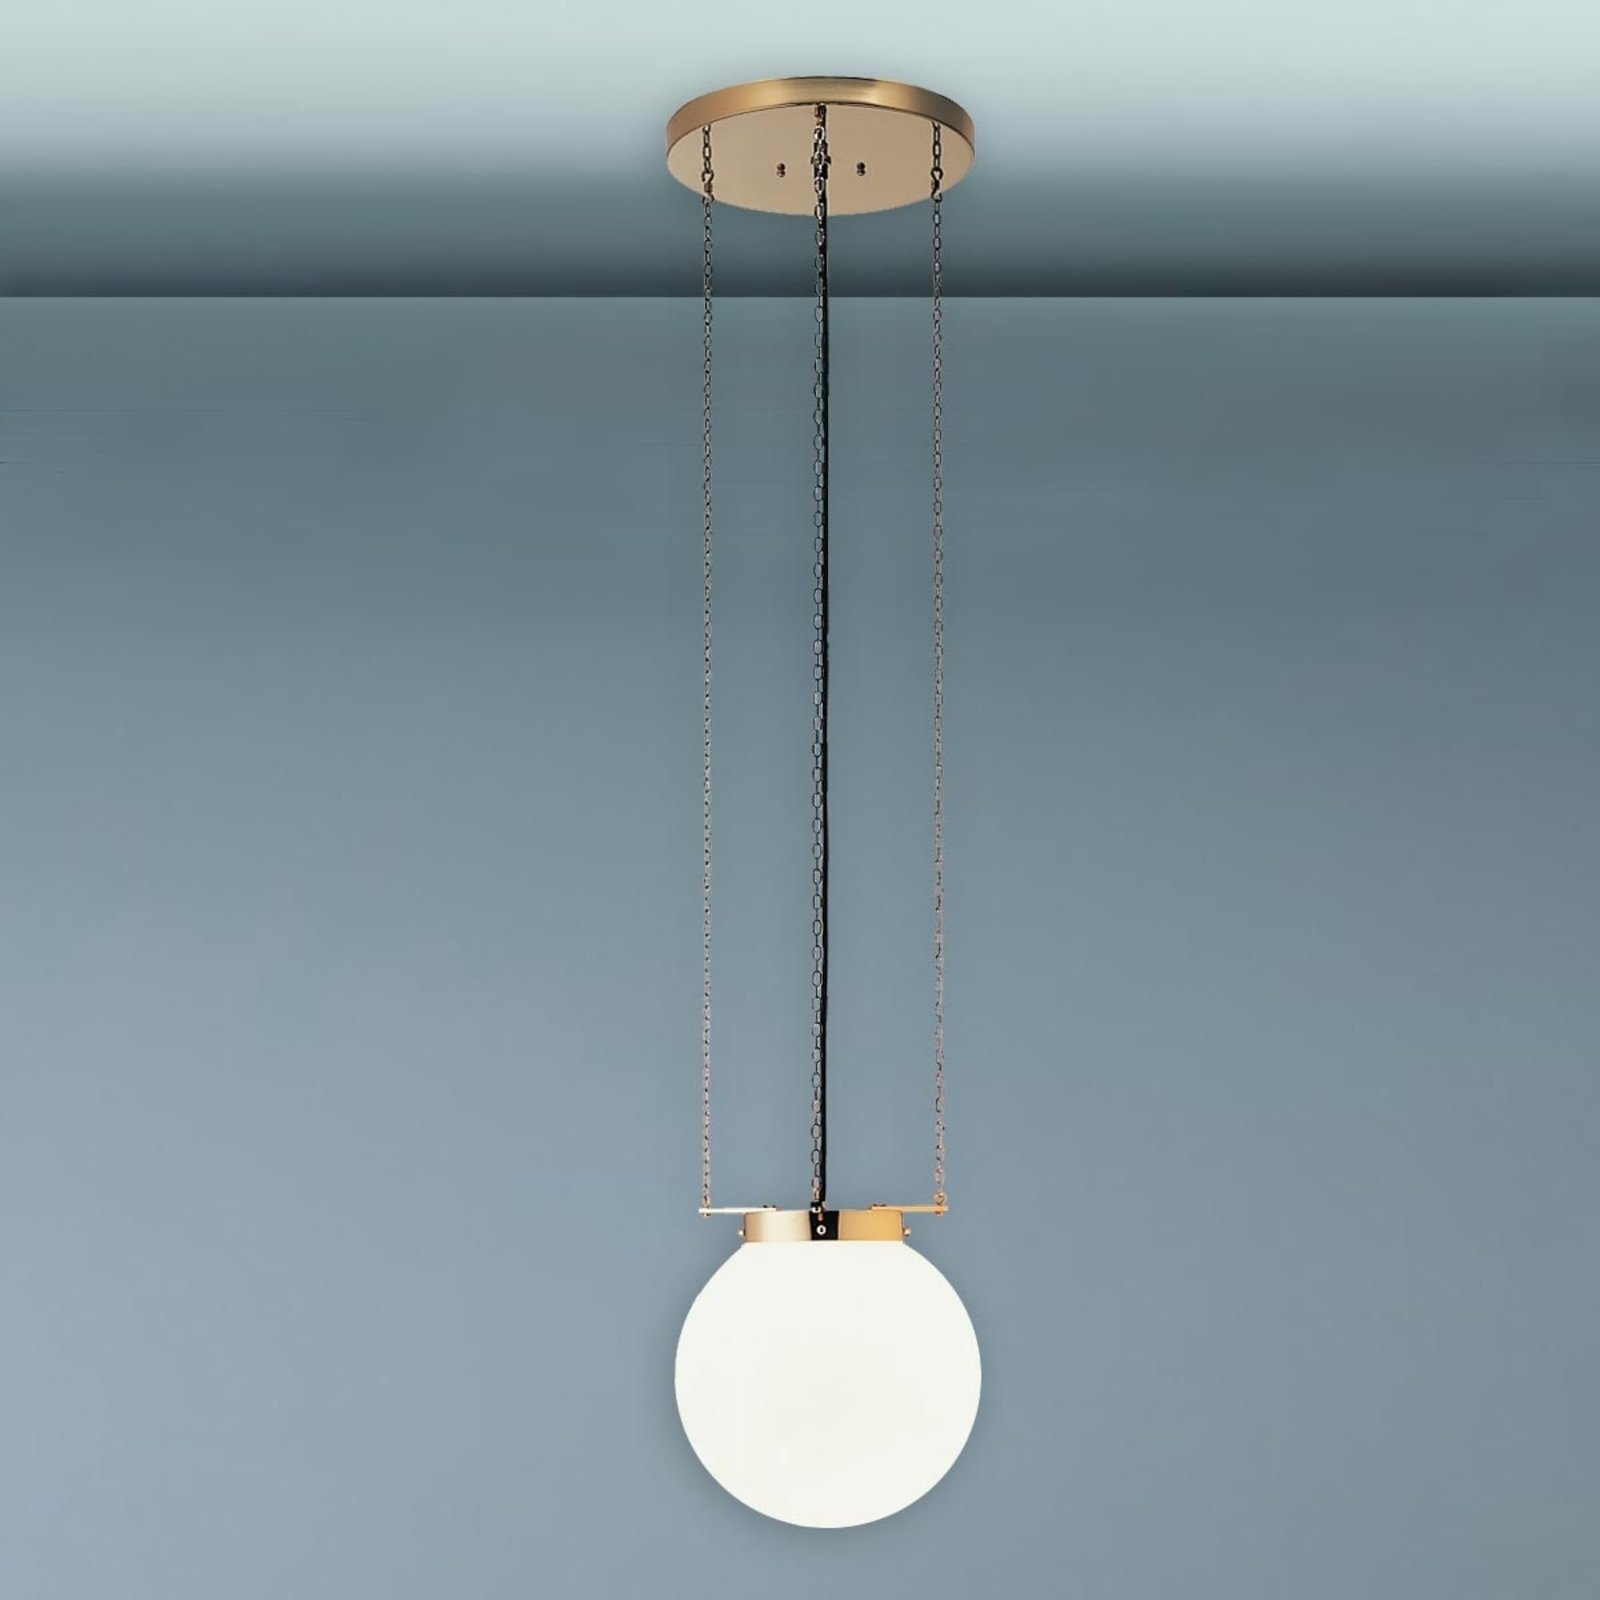 Hanglamp in Bauhaus-stijl, messing, 25 cm